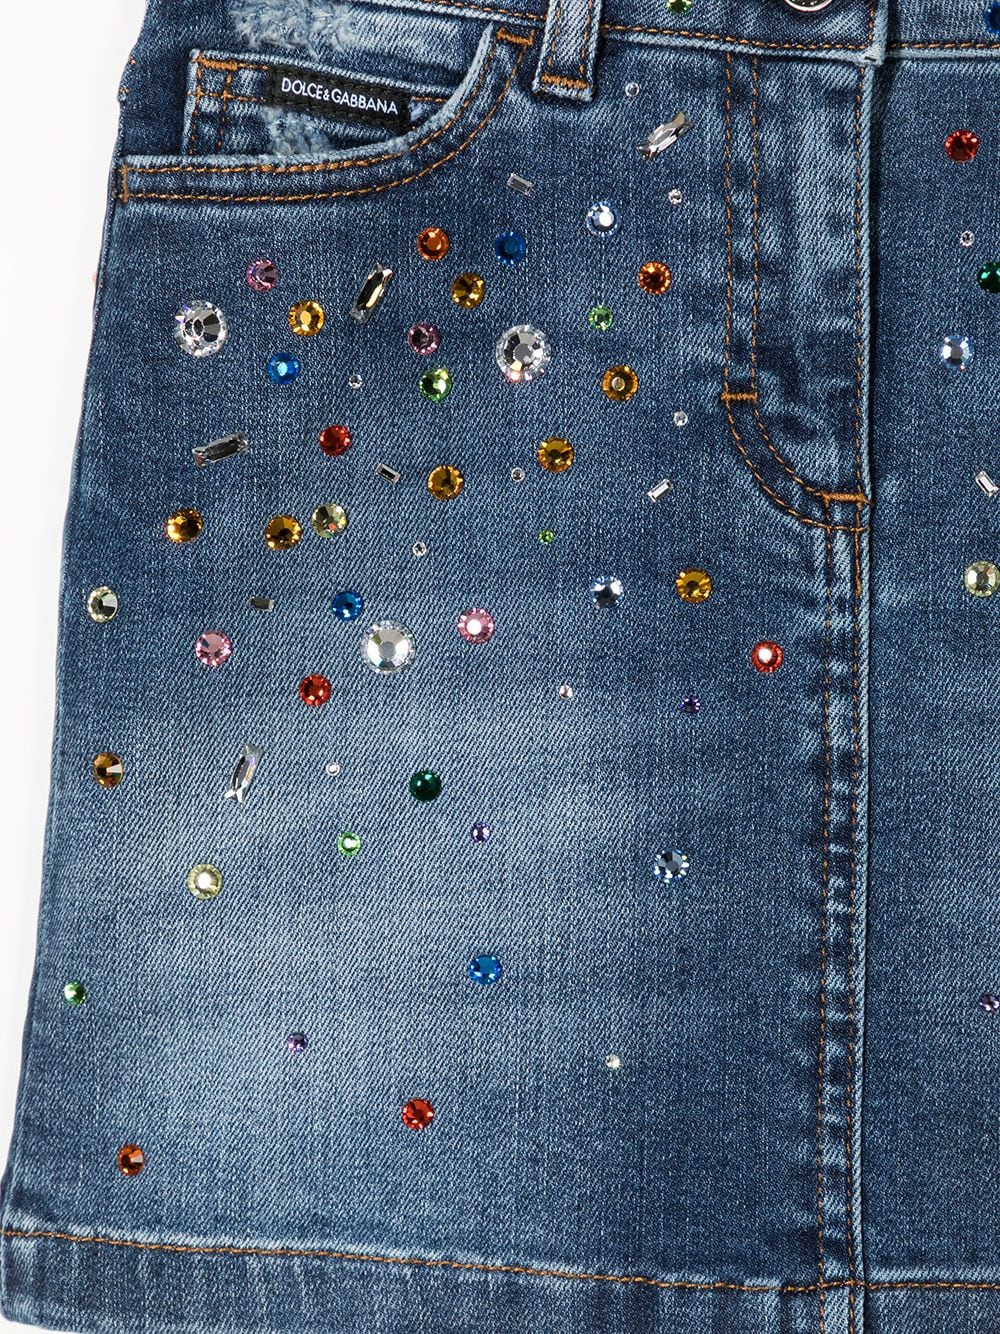 фото Dolce & gabbana kids джинсовая юбка с кристаллами